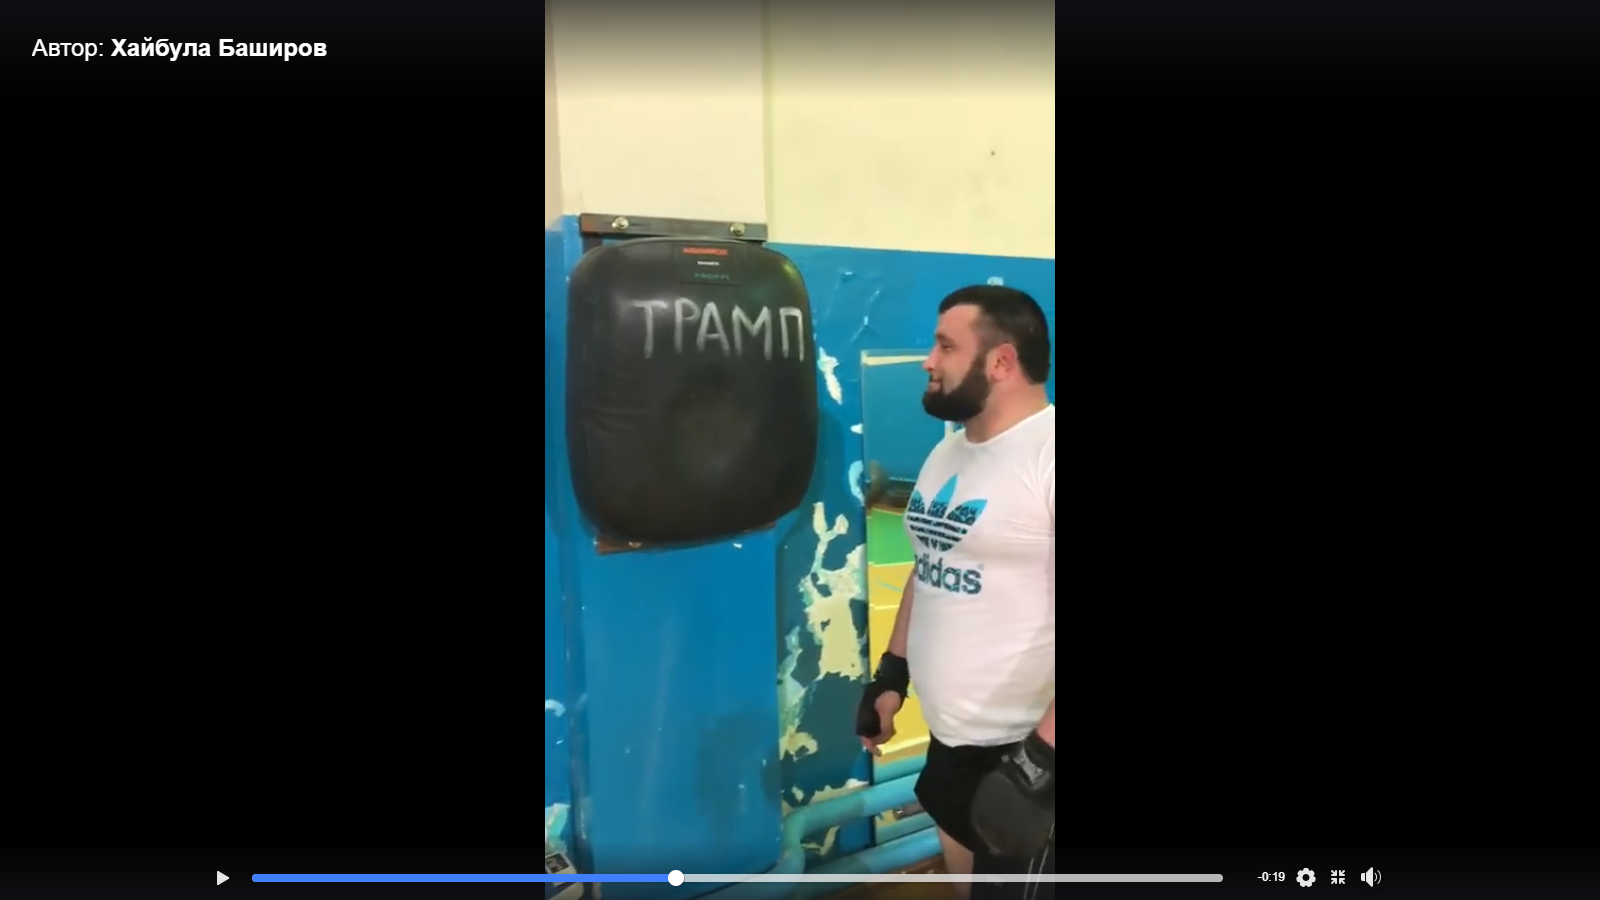 Сеанс симпатической магии - дагестанской боксер избивает «Трампа»